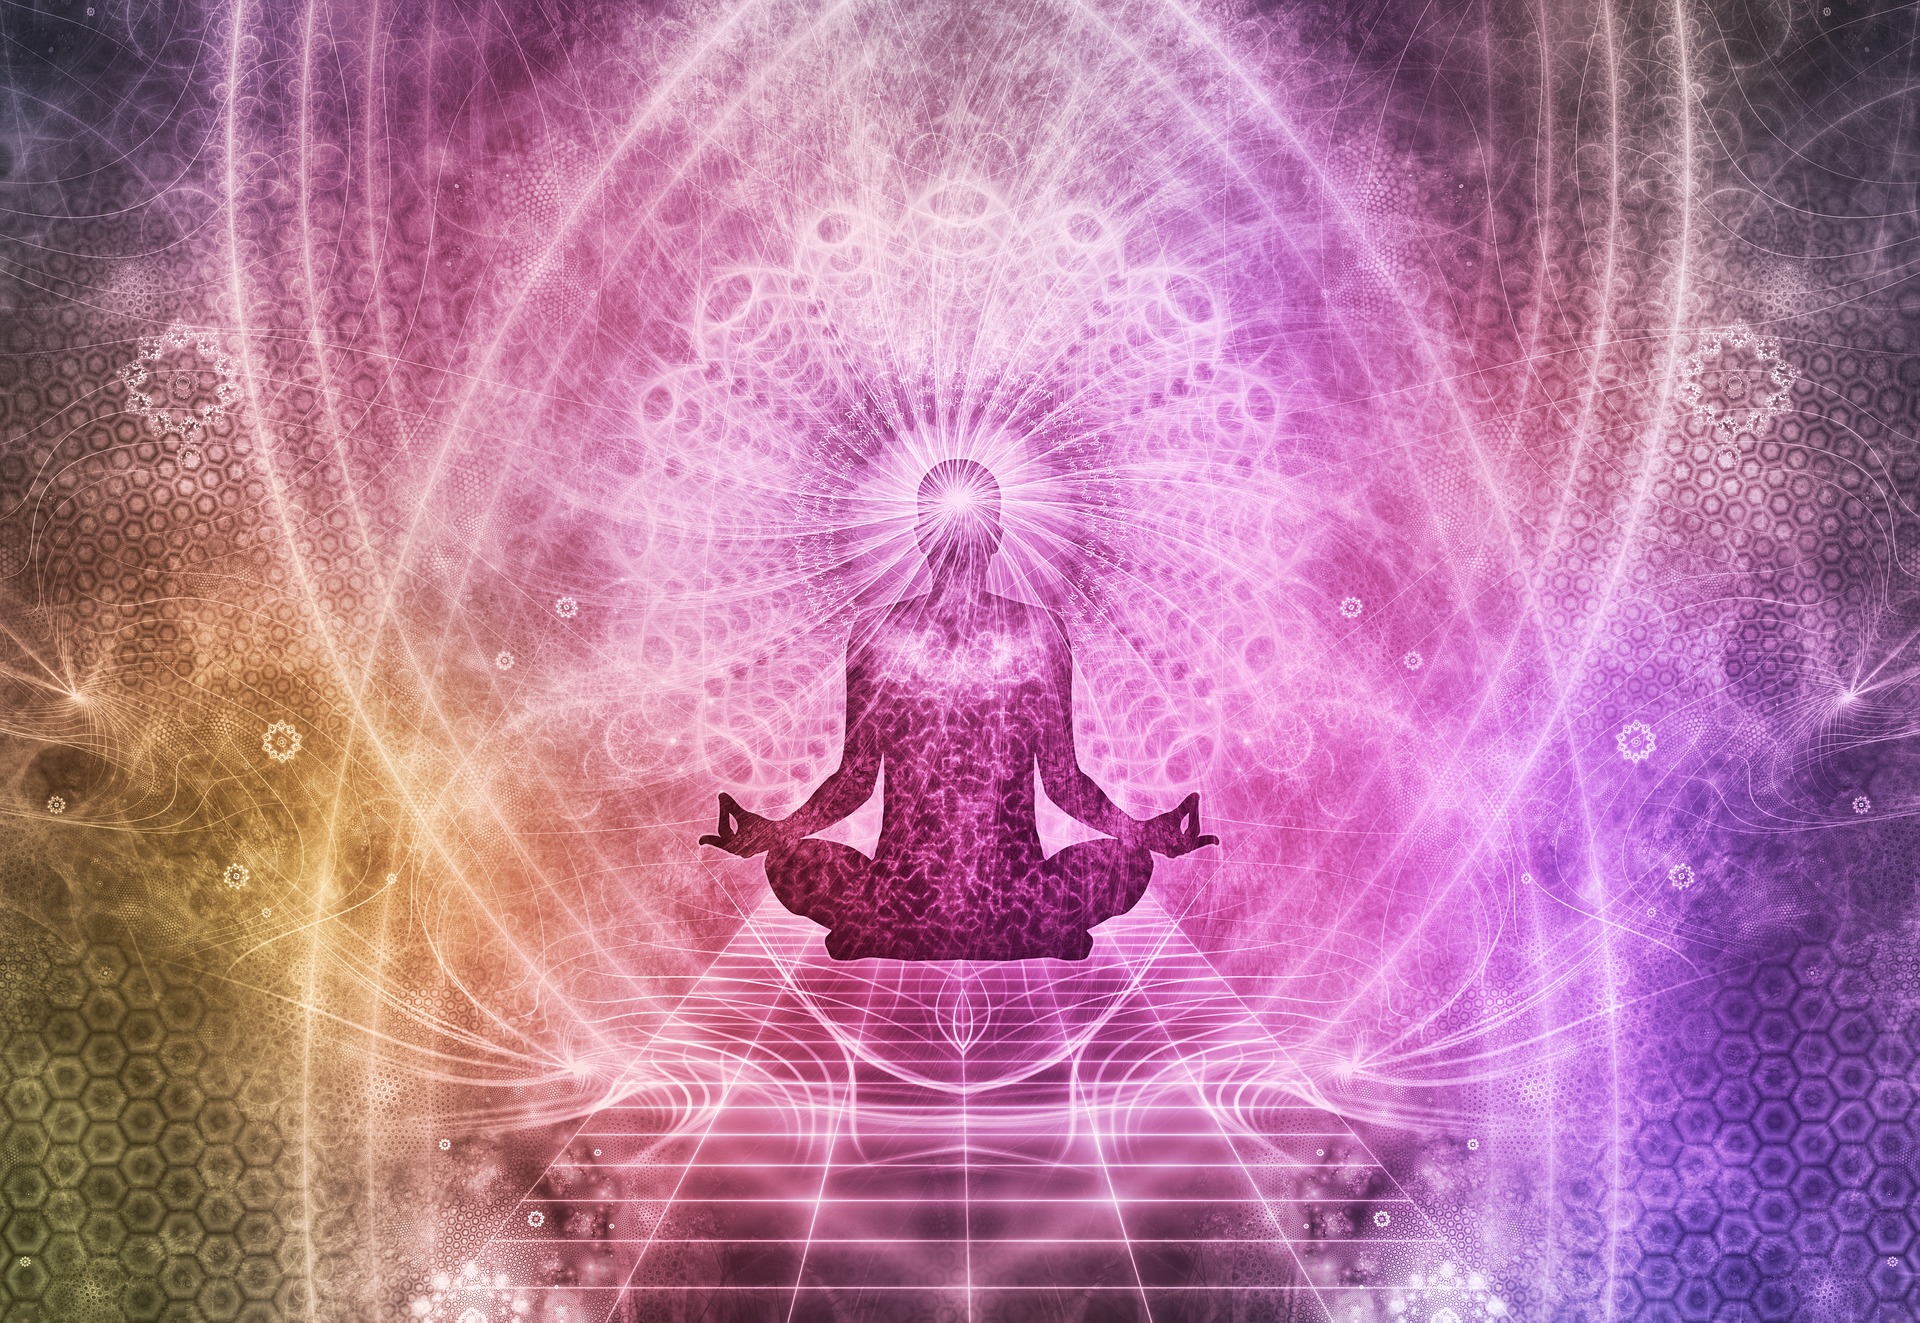 Meditation - Vipassana